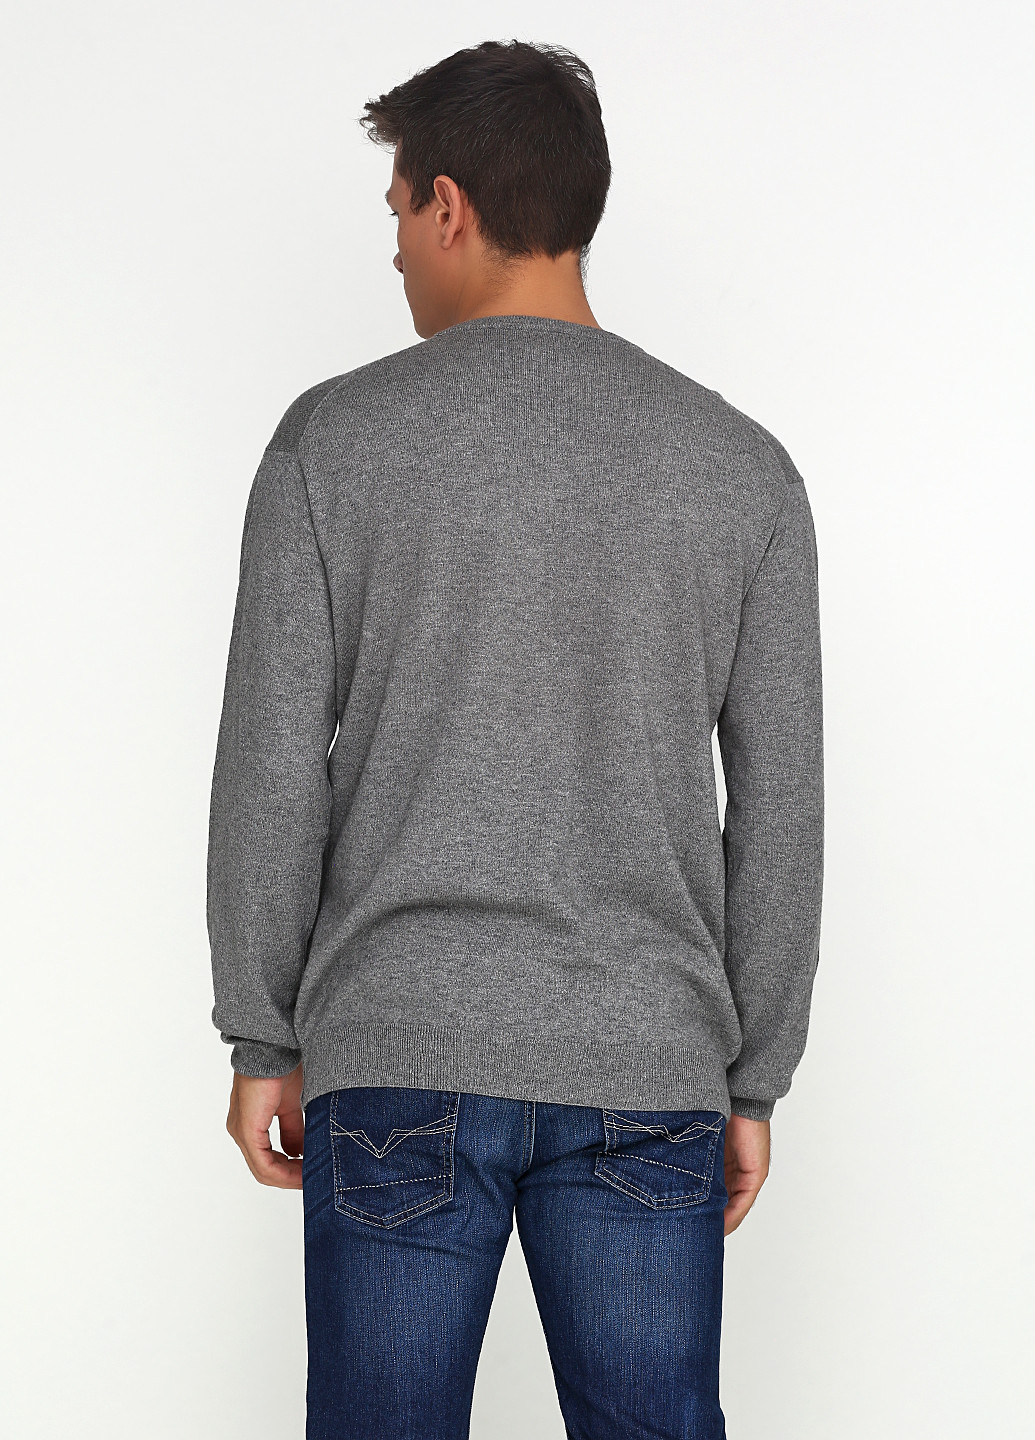 Темно-серый демисезонный пуловер пуловер Gant